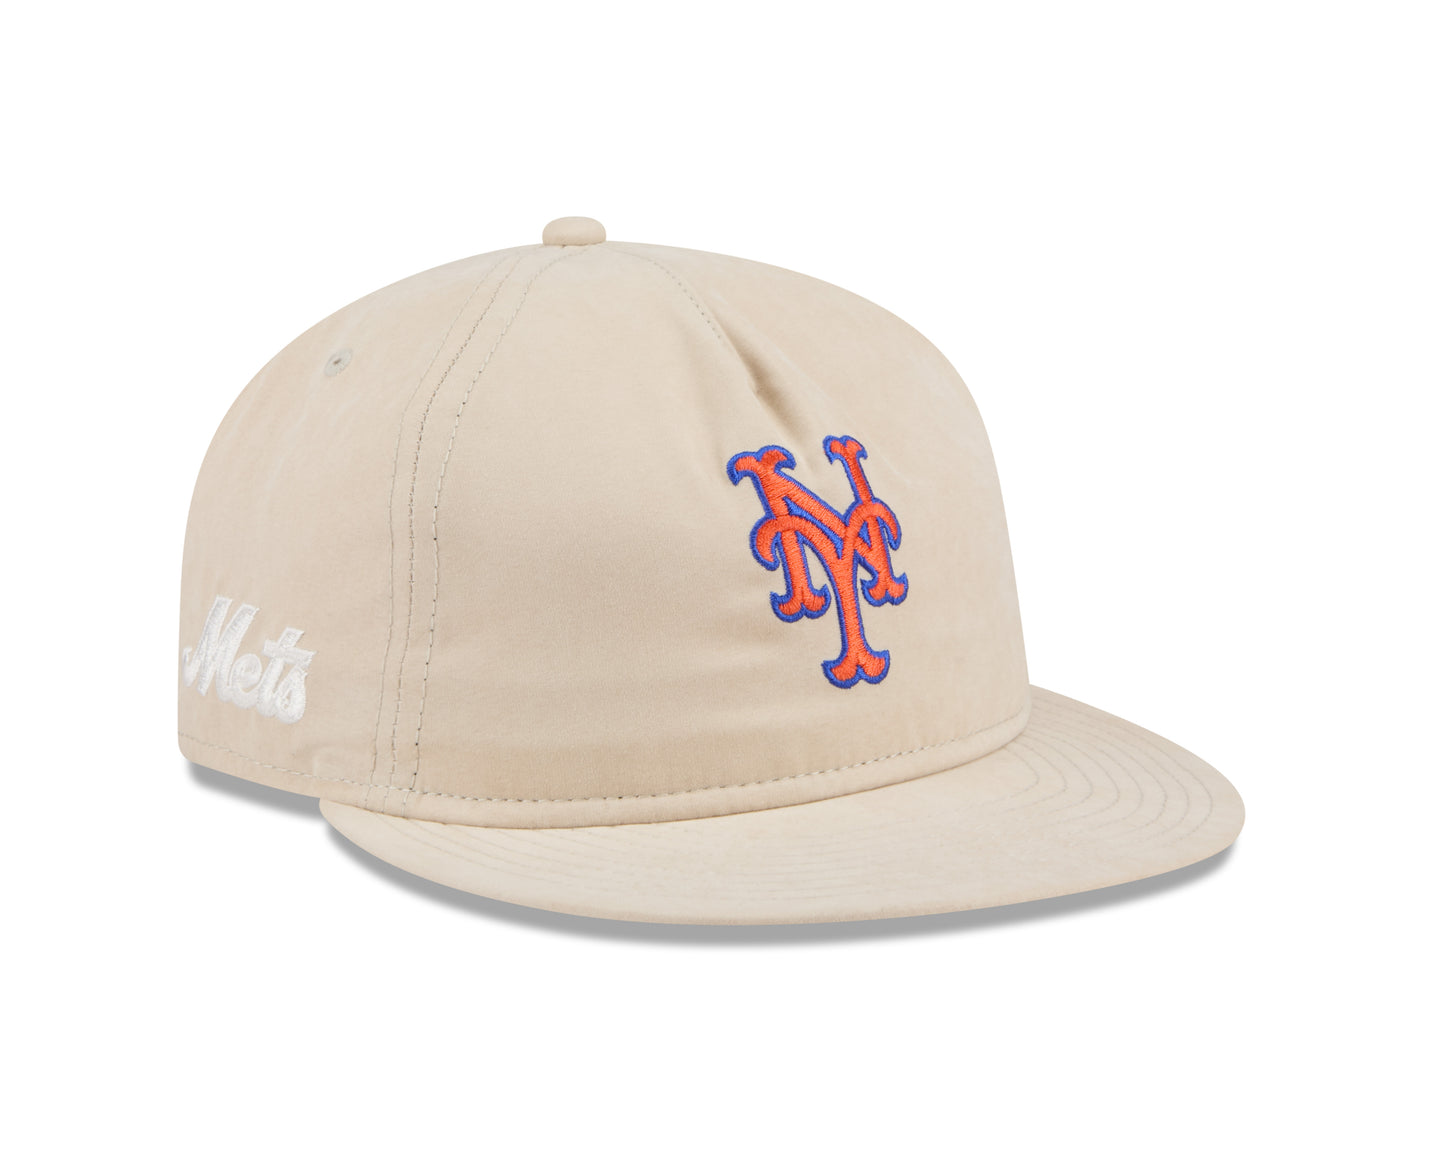 New Era - 9Fifty Retro Crown - Brushed Nylon - New York Mets - Stone - Headz Up 